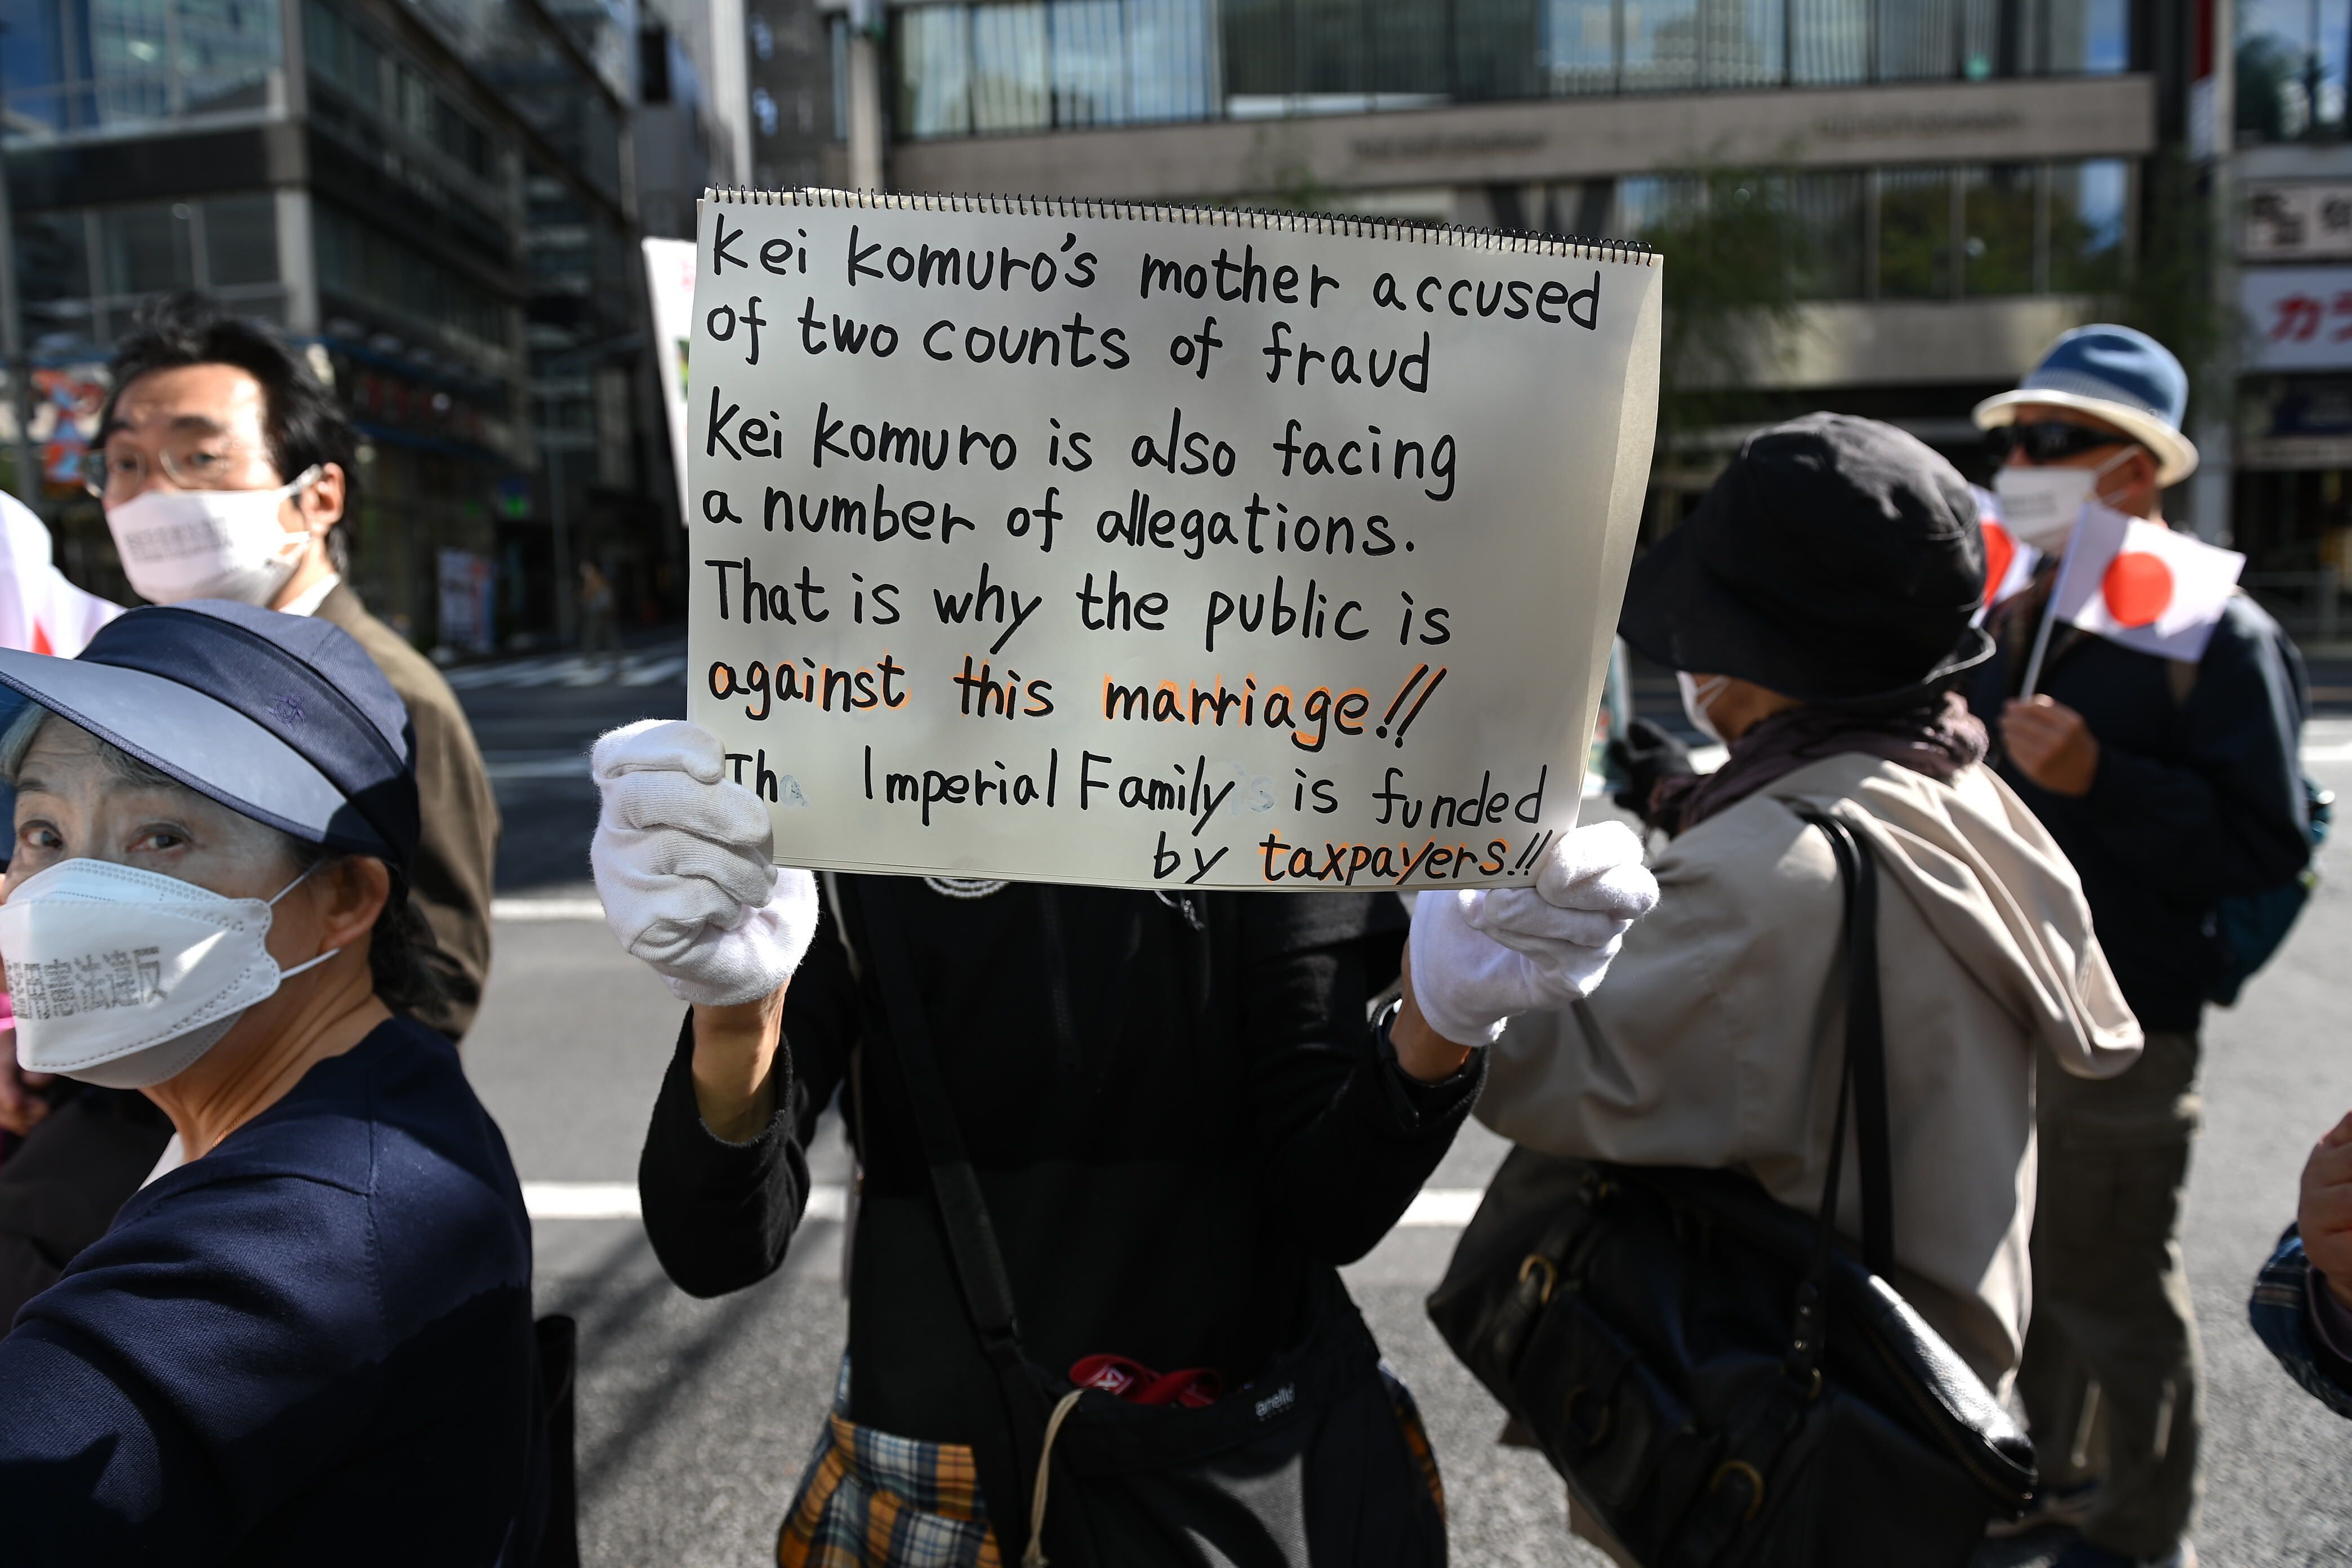 Proteste am Tag der Hochzeit von Prinzessin Mako. Auf dem Demo-Schild steht so viel wie: "Kei Komuros Mutter wird zweifacher Betrug vorgeworfen. Kei Komuro muss sich ebenfalls wegen mehreren Anschuldigungen verantworten. Darum ist die Öffentlichkeit gegen diese Ehe. Die kaiserliche Familie wird von den Steuerzahlern finanziert."